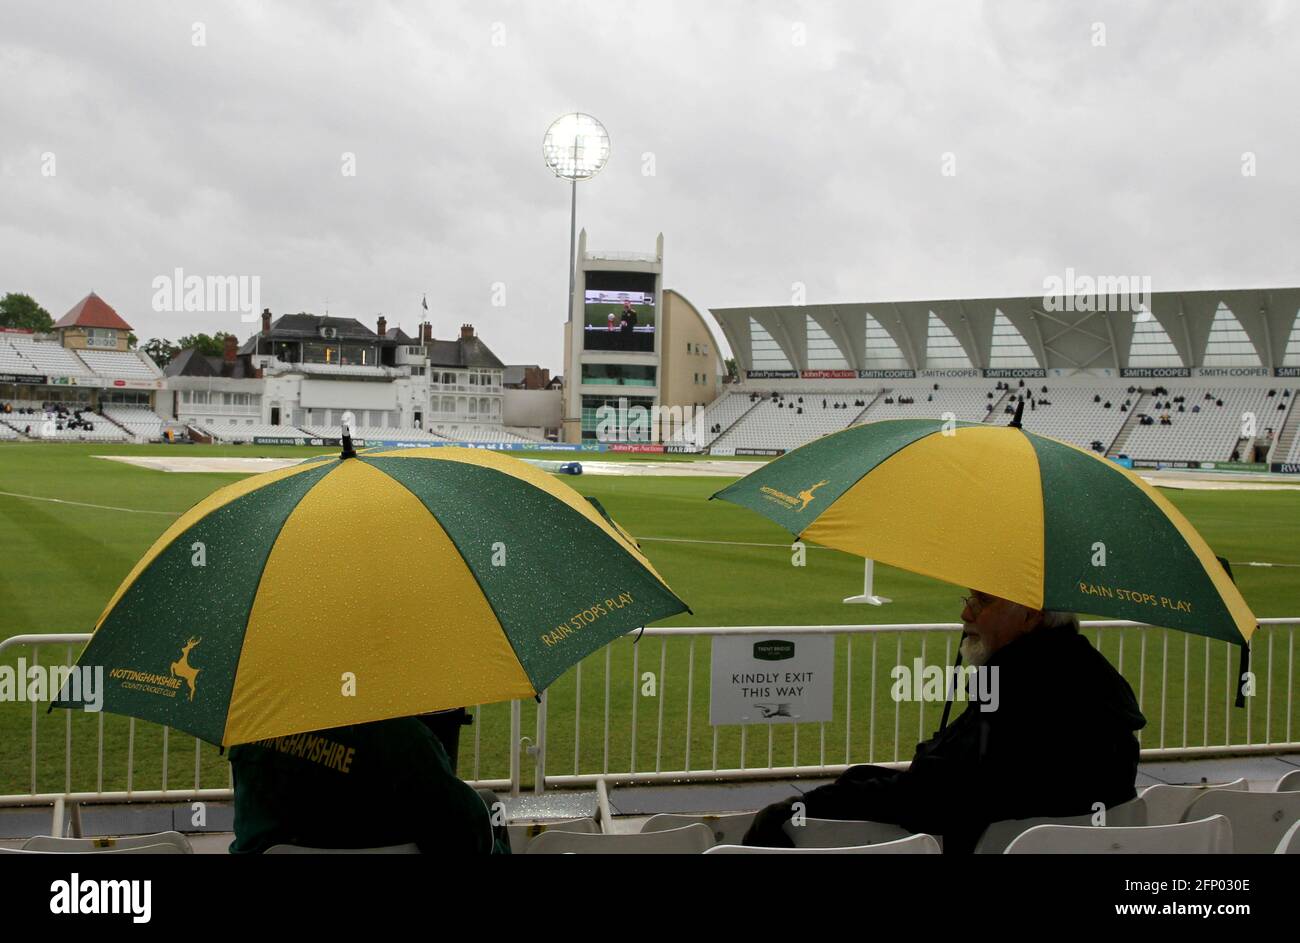 Die Zuschauer schützen sich unter Regenschirmen von Nottinghamshire, während am ersten Tag des LV= Insurance County Championship-Spiels an der Trent Bridge, Nottingham, der Regen aufhört zu spielen. Bilddatum: Donnerstag, 20. Mai 2021. Stockfoto